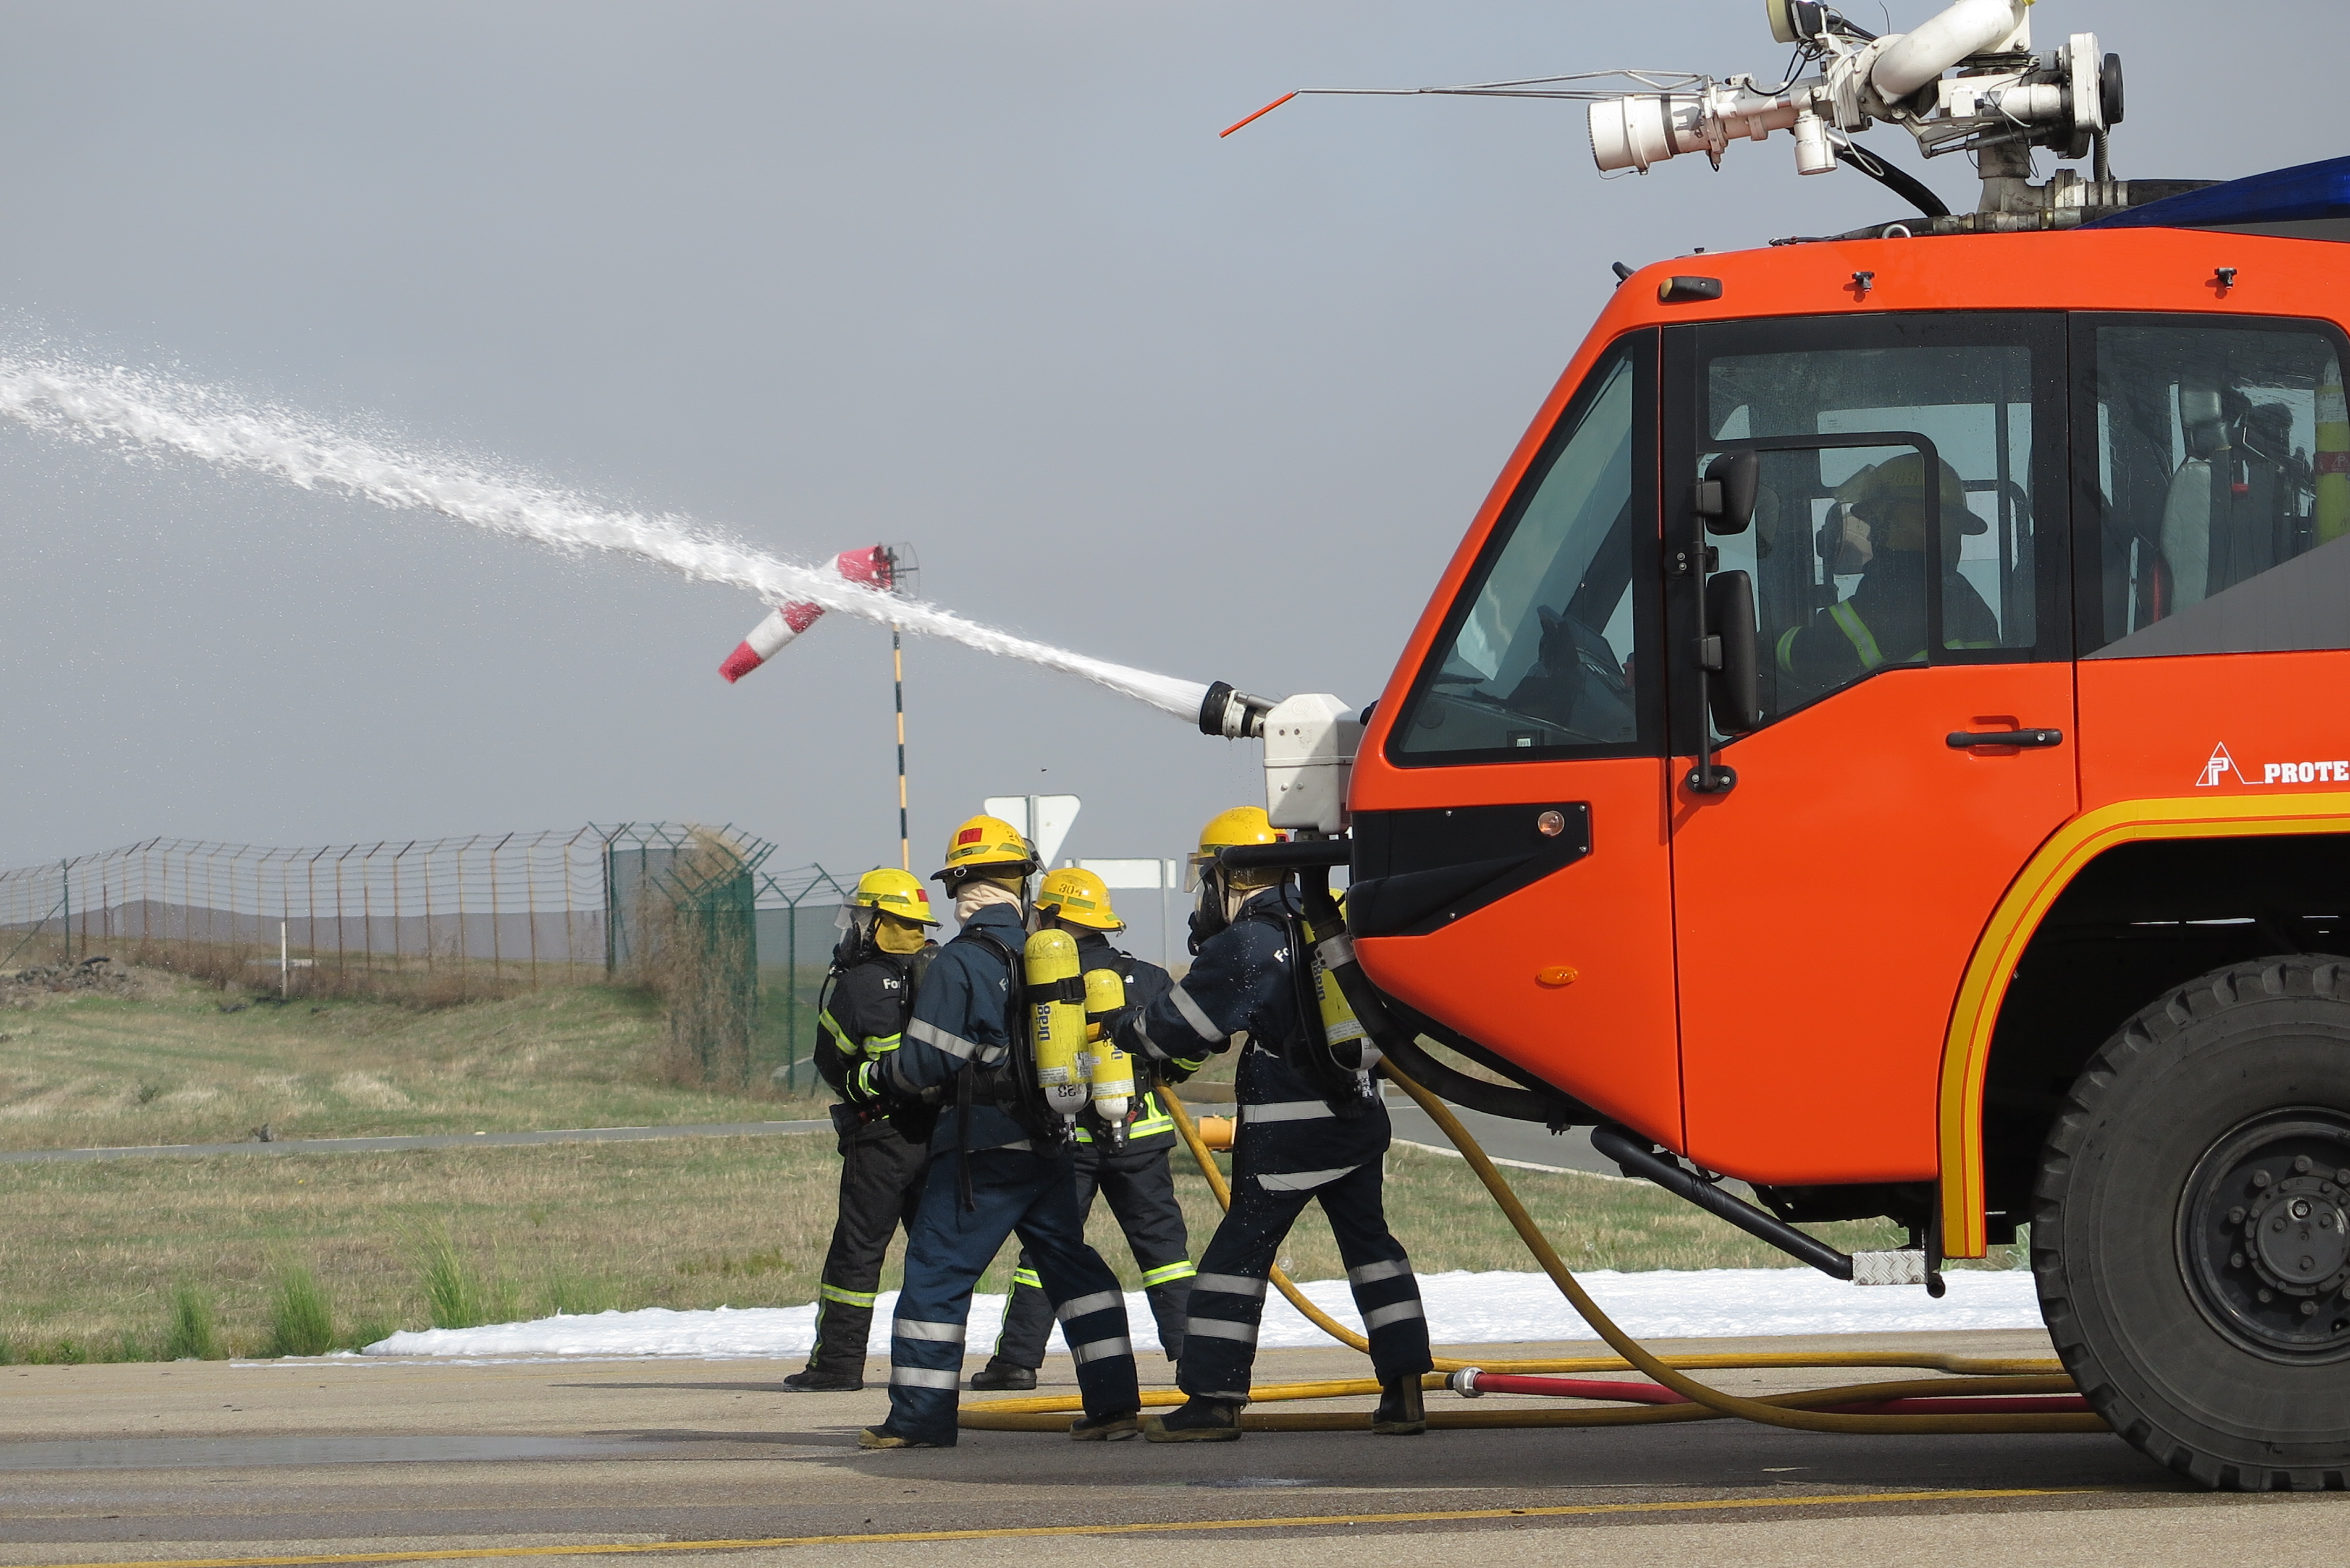 BA11 e Aeroporto de Beja testam plano de emergncia